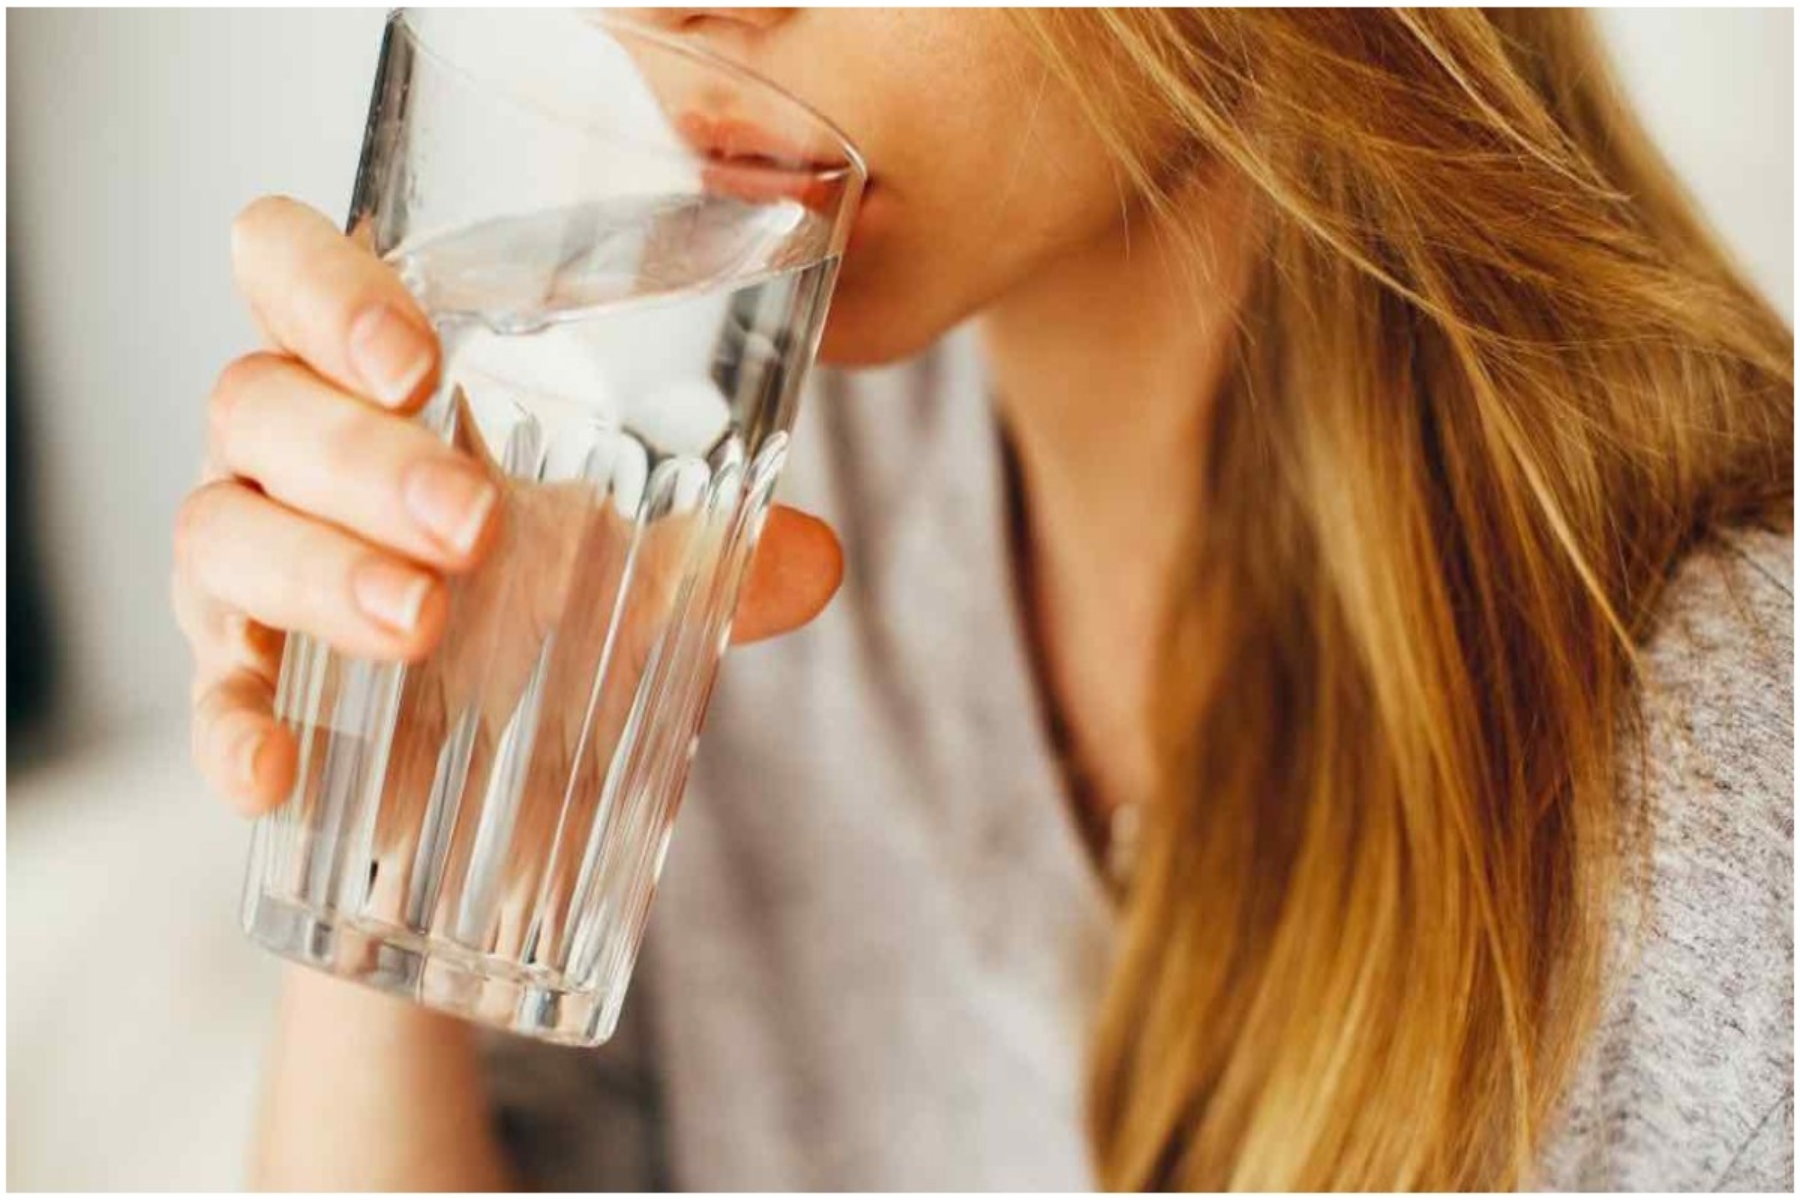 Ξεχνάτε να πιείτε νερό; Μην υποτιμάτε τον κίνδυνο